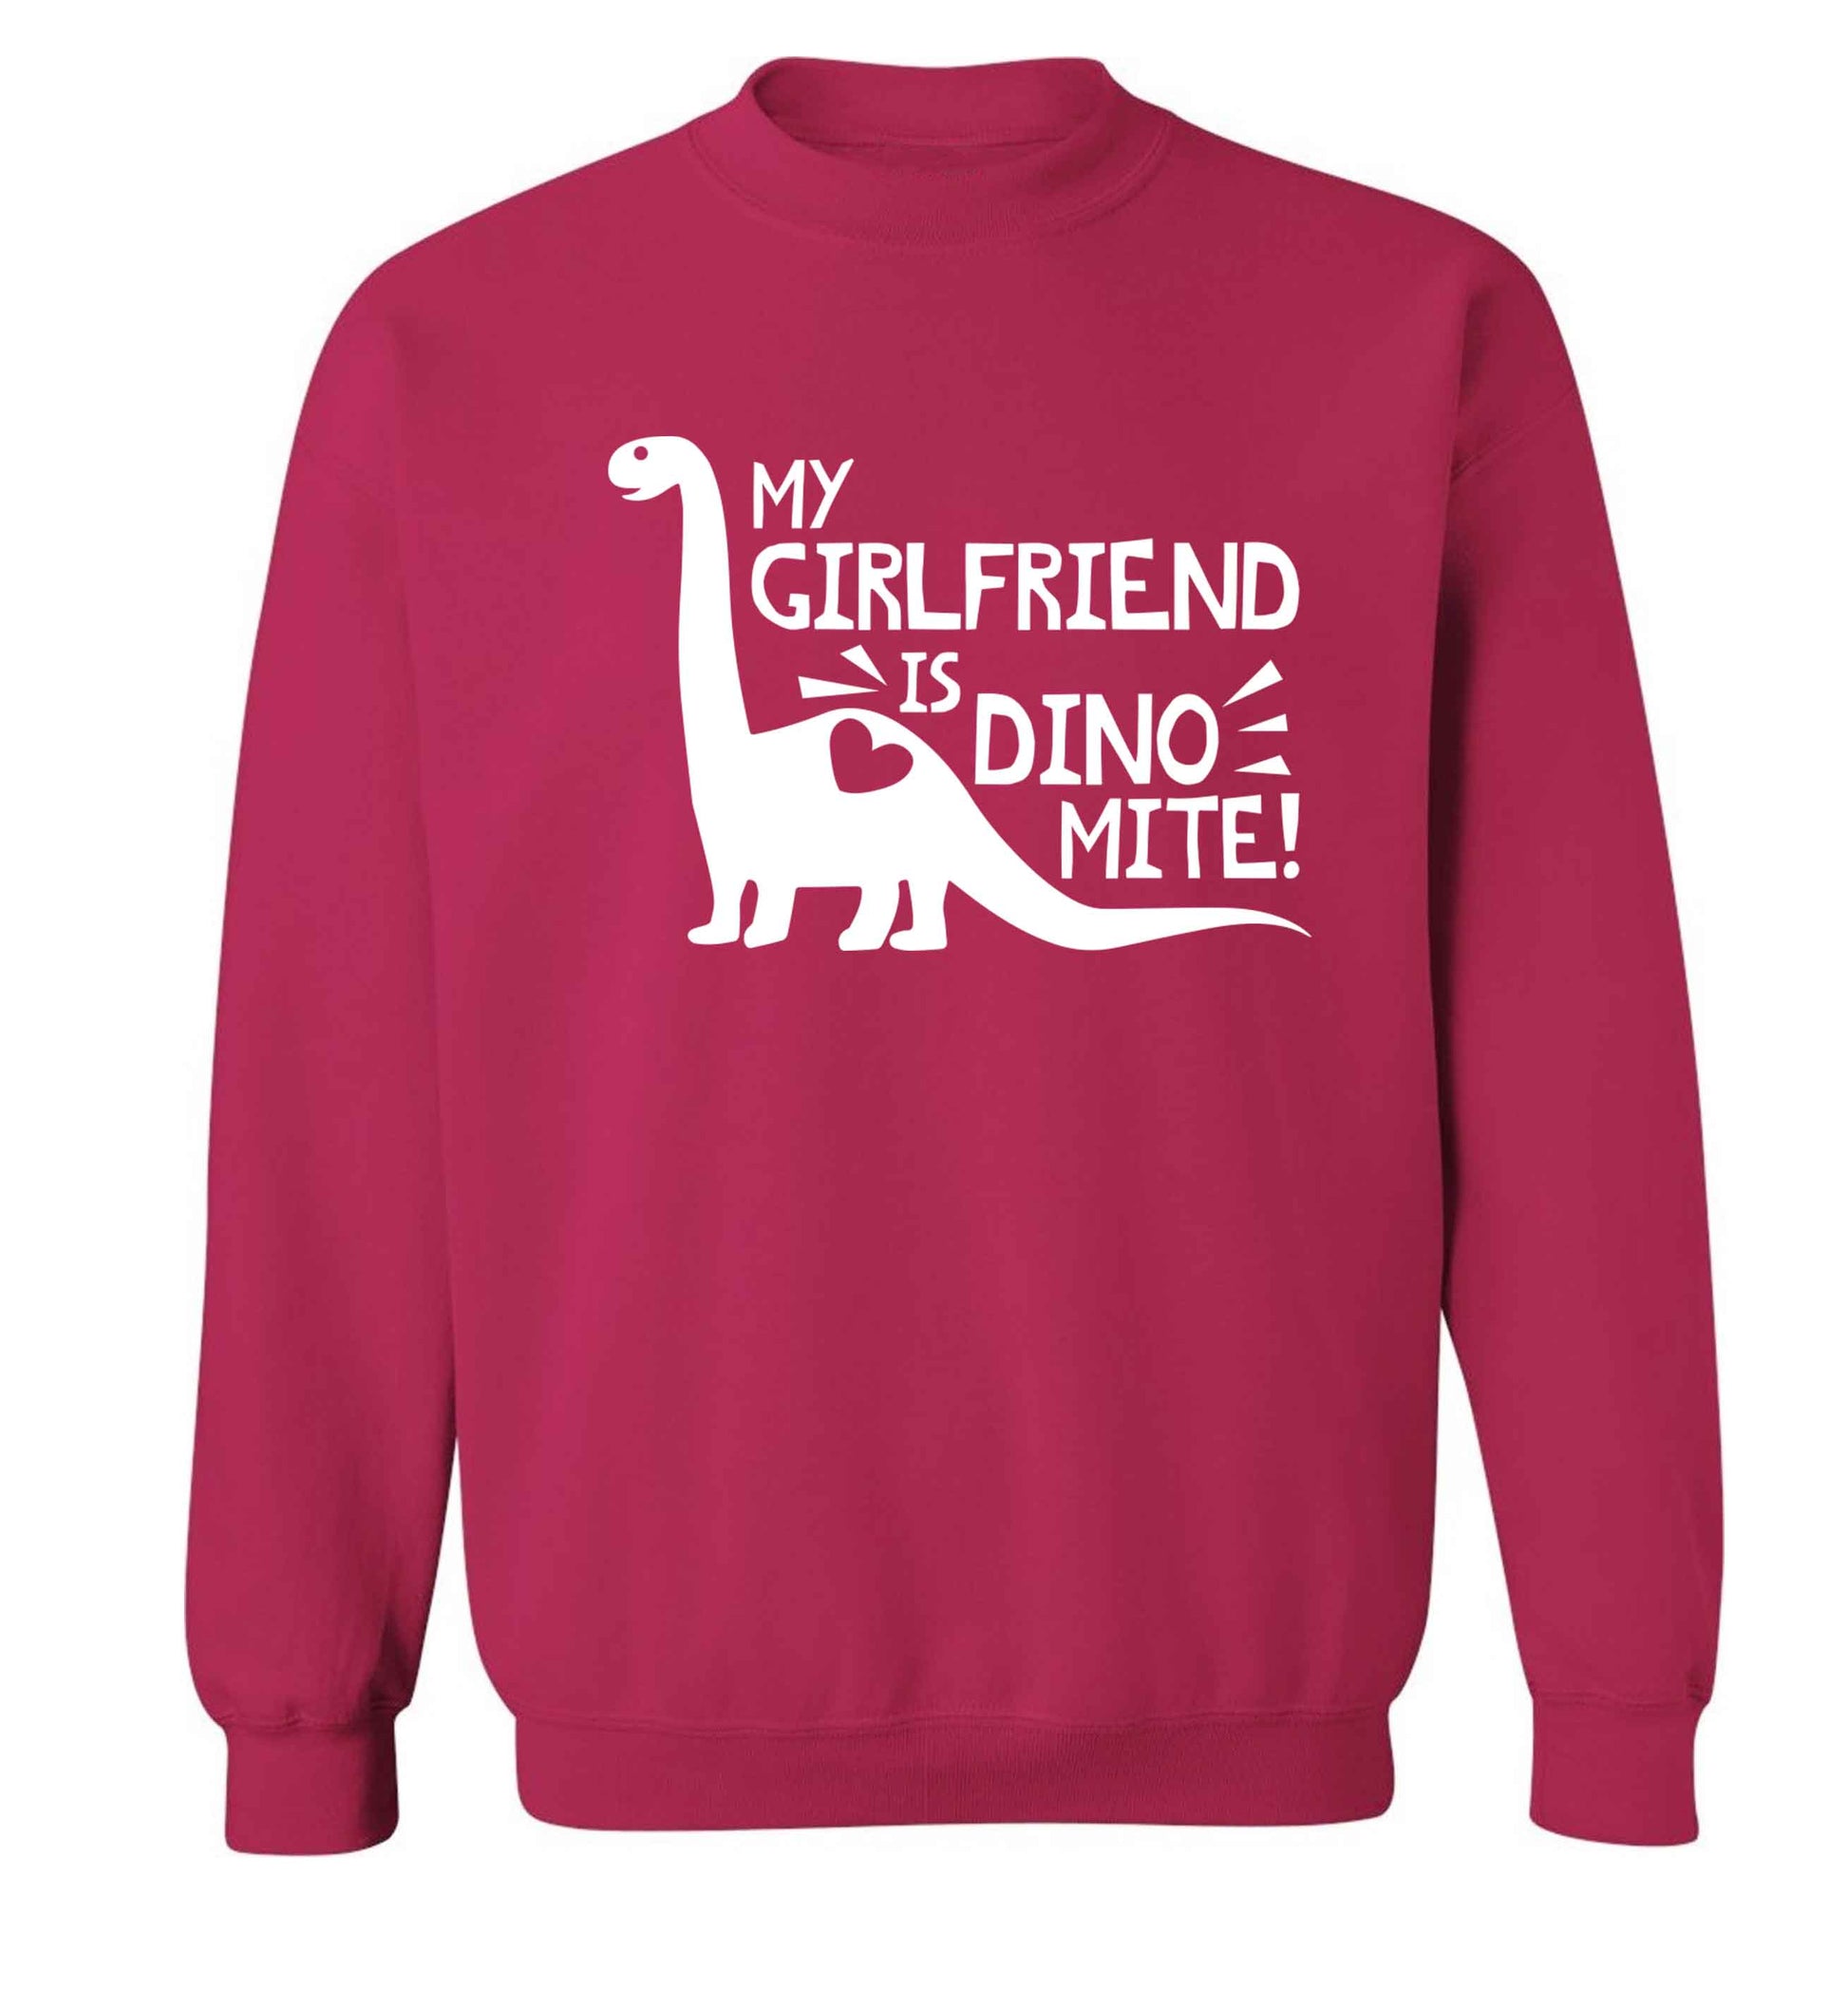 My girlfriend is dinomite! Adult's unisex pink Sweater 2XL